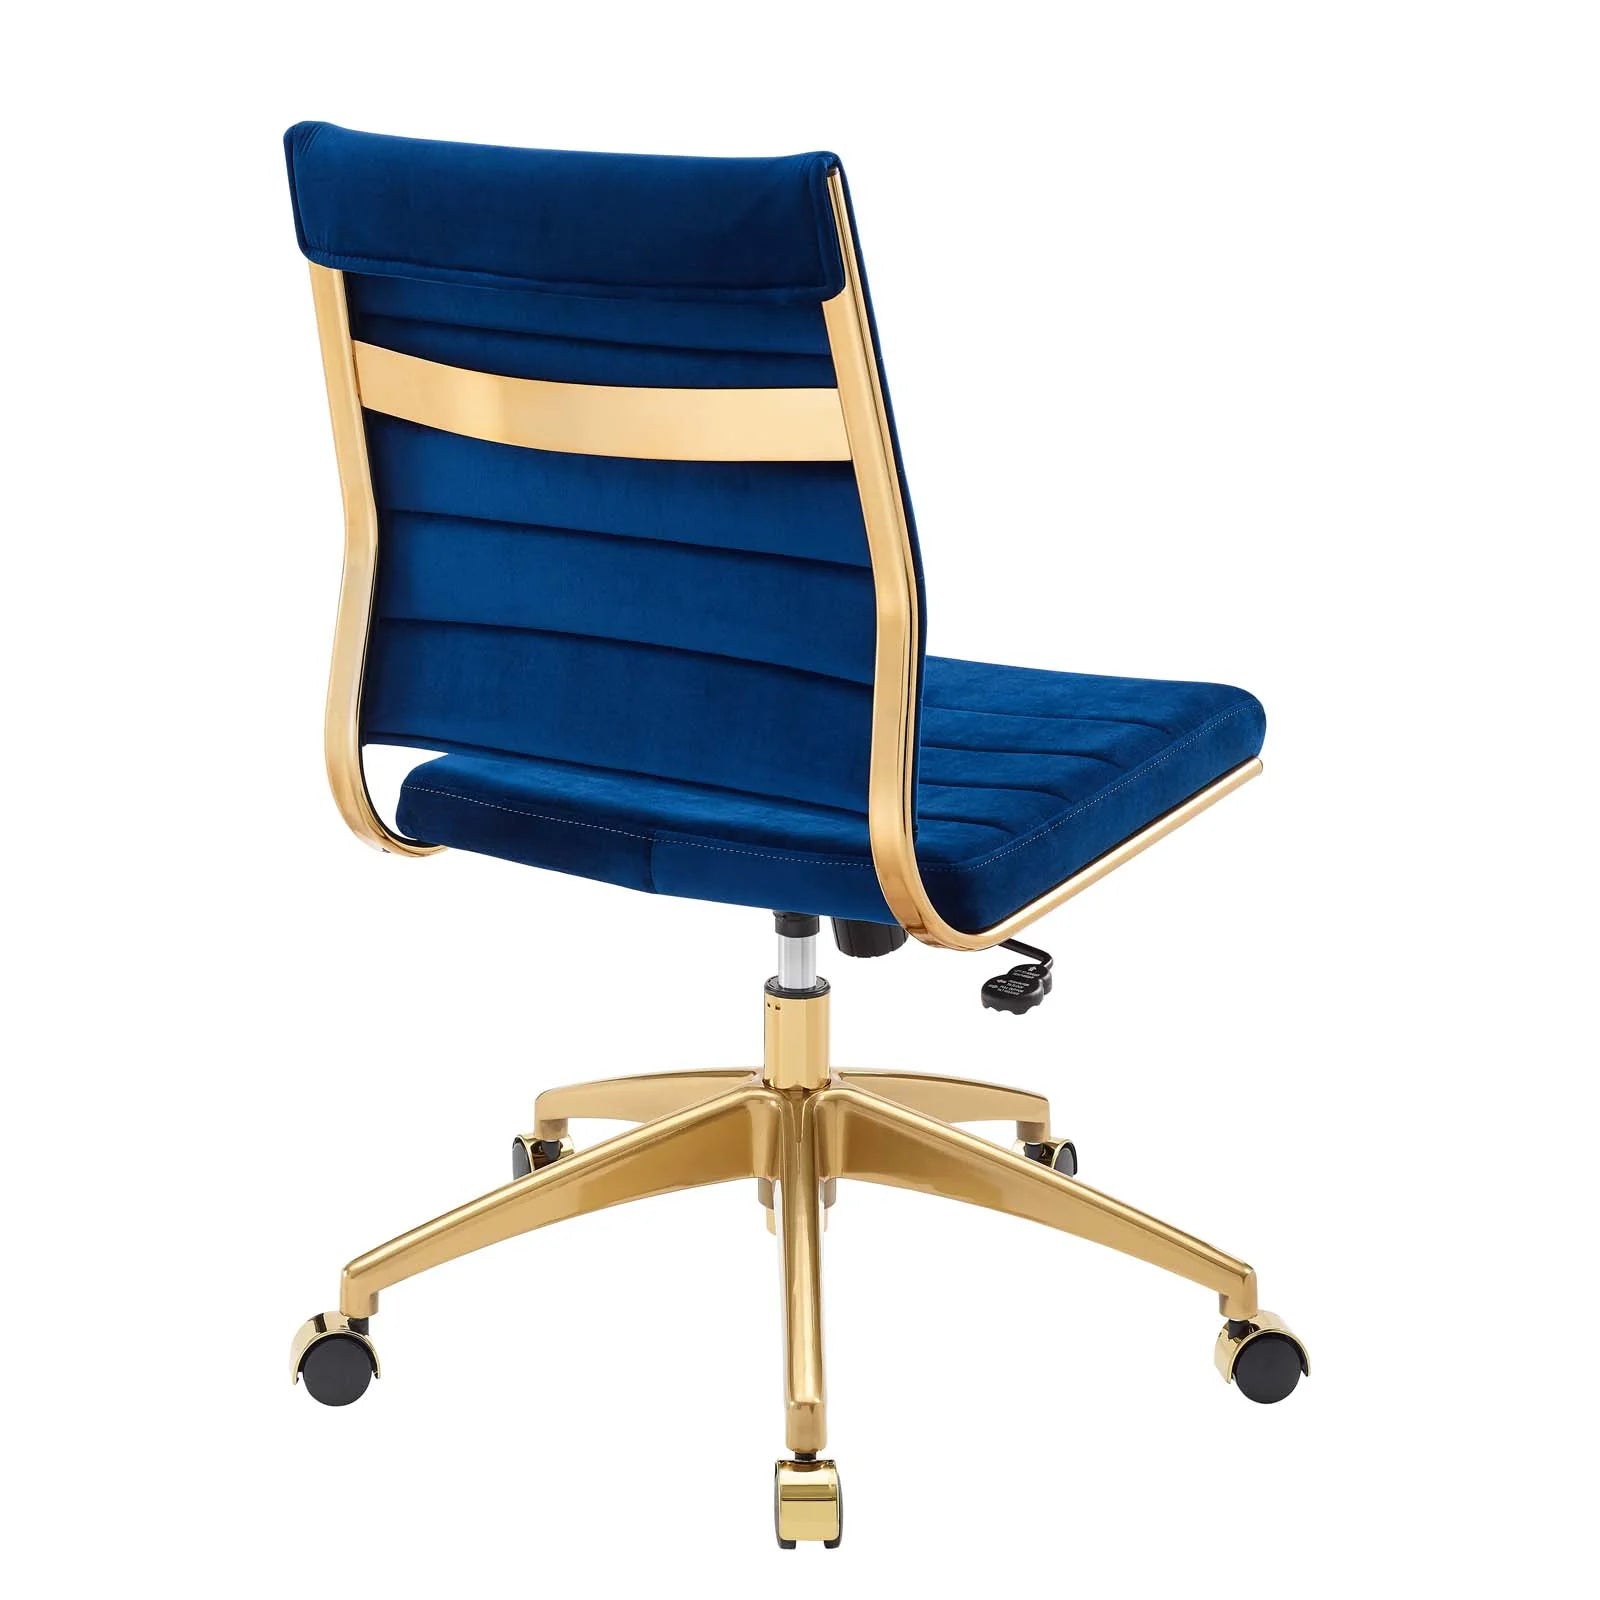 Silla para escritorio moderna sin descansabrazos azul con dorado Zoa de espaldas.